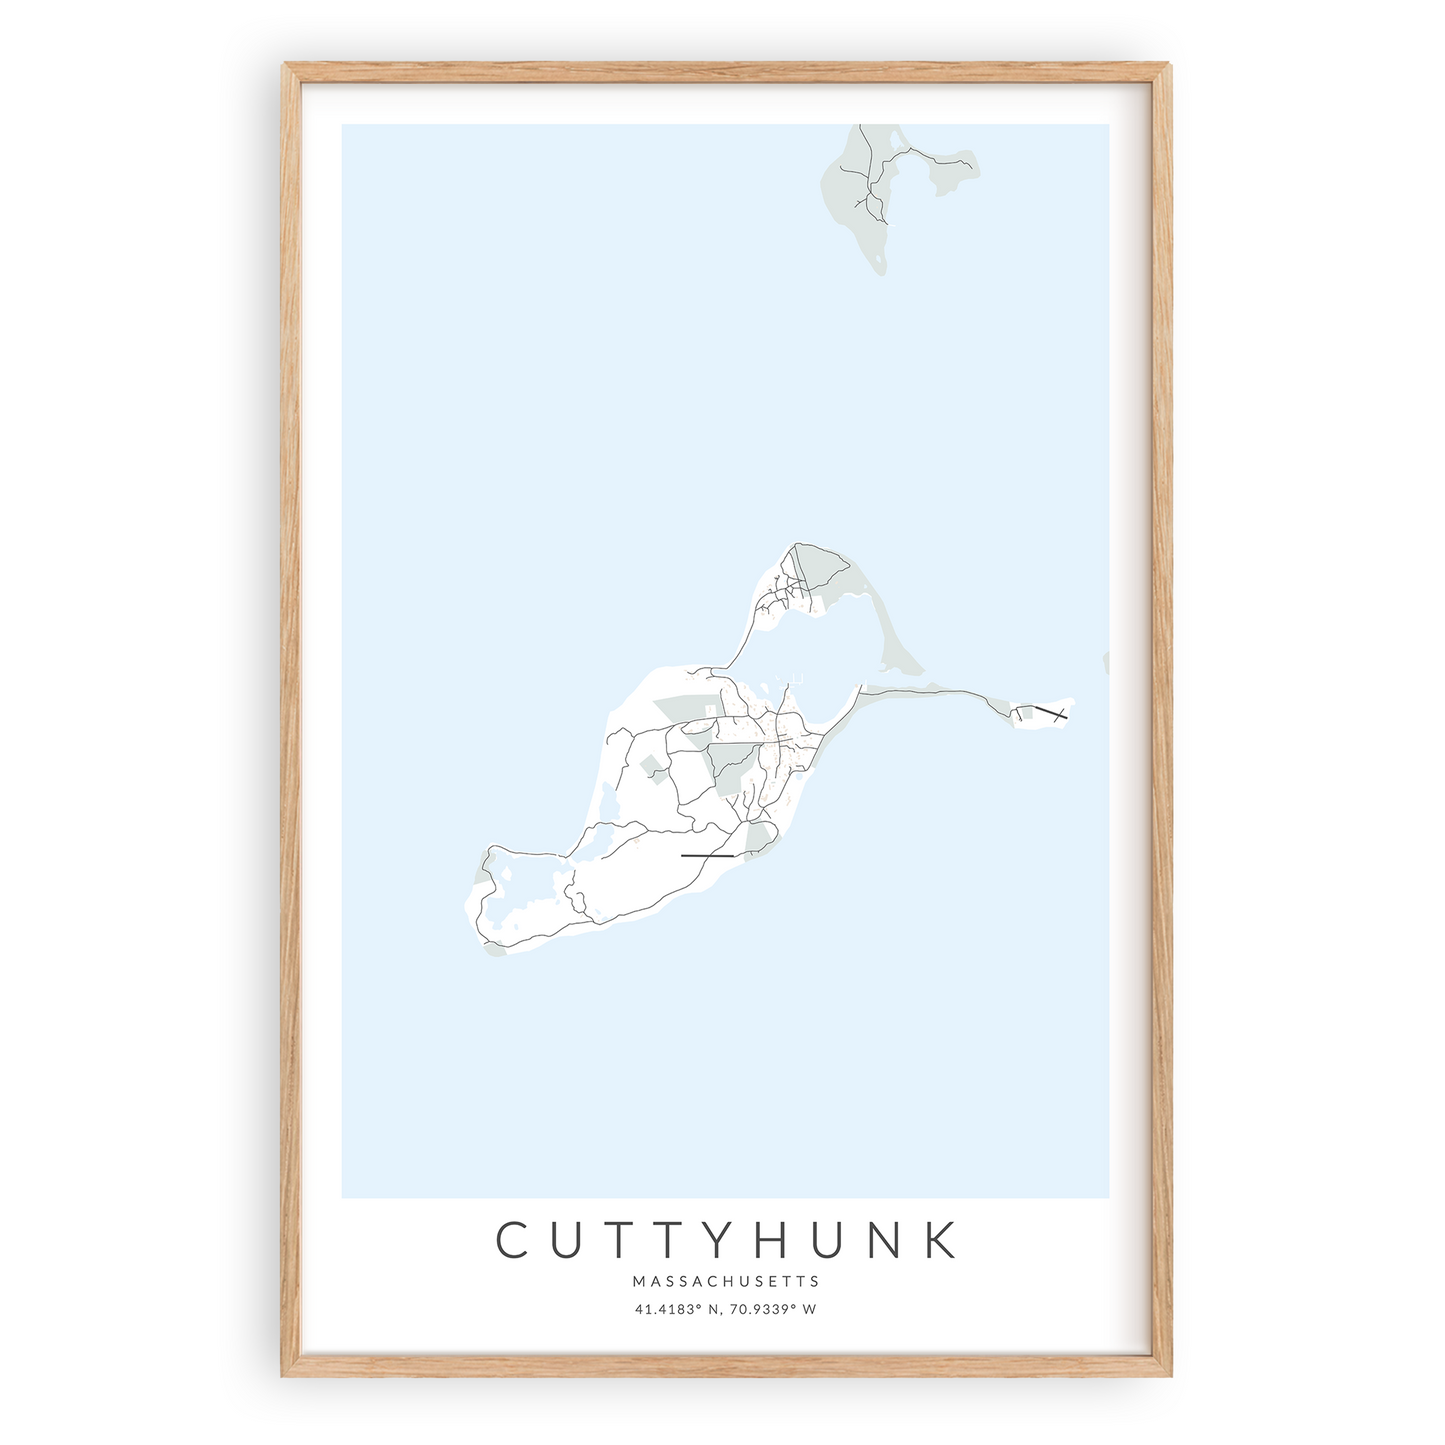 cuttyhunk island massachusetts map print in wood frame